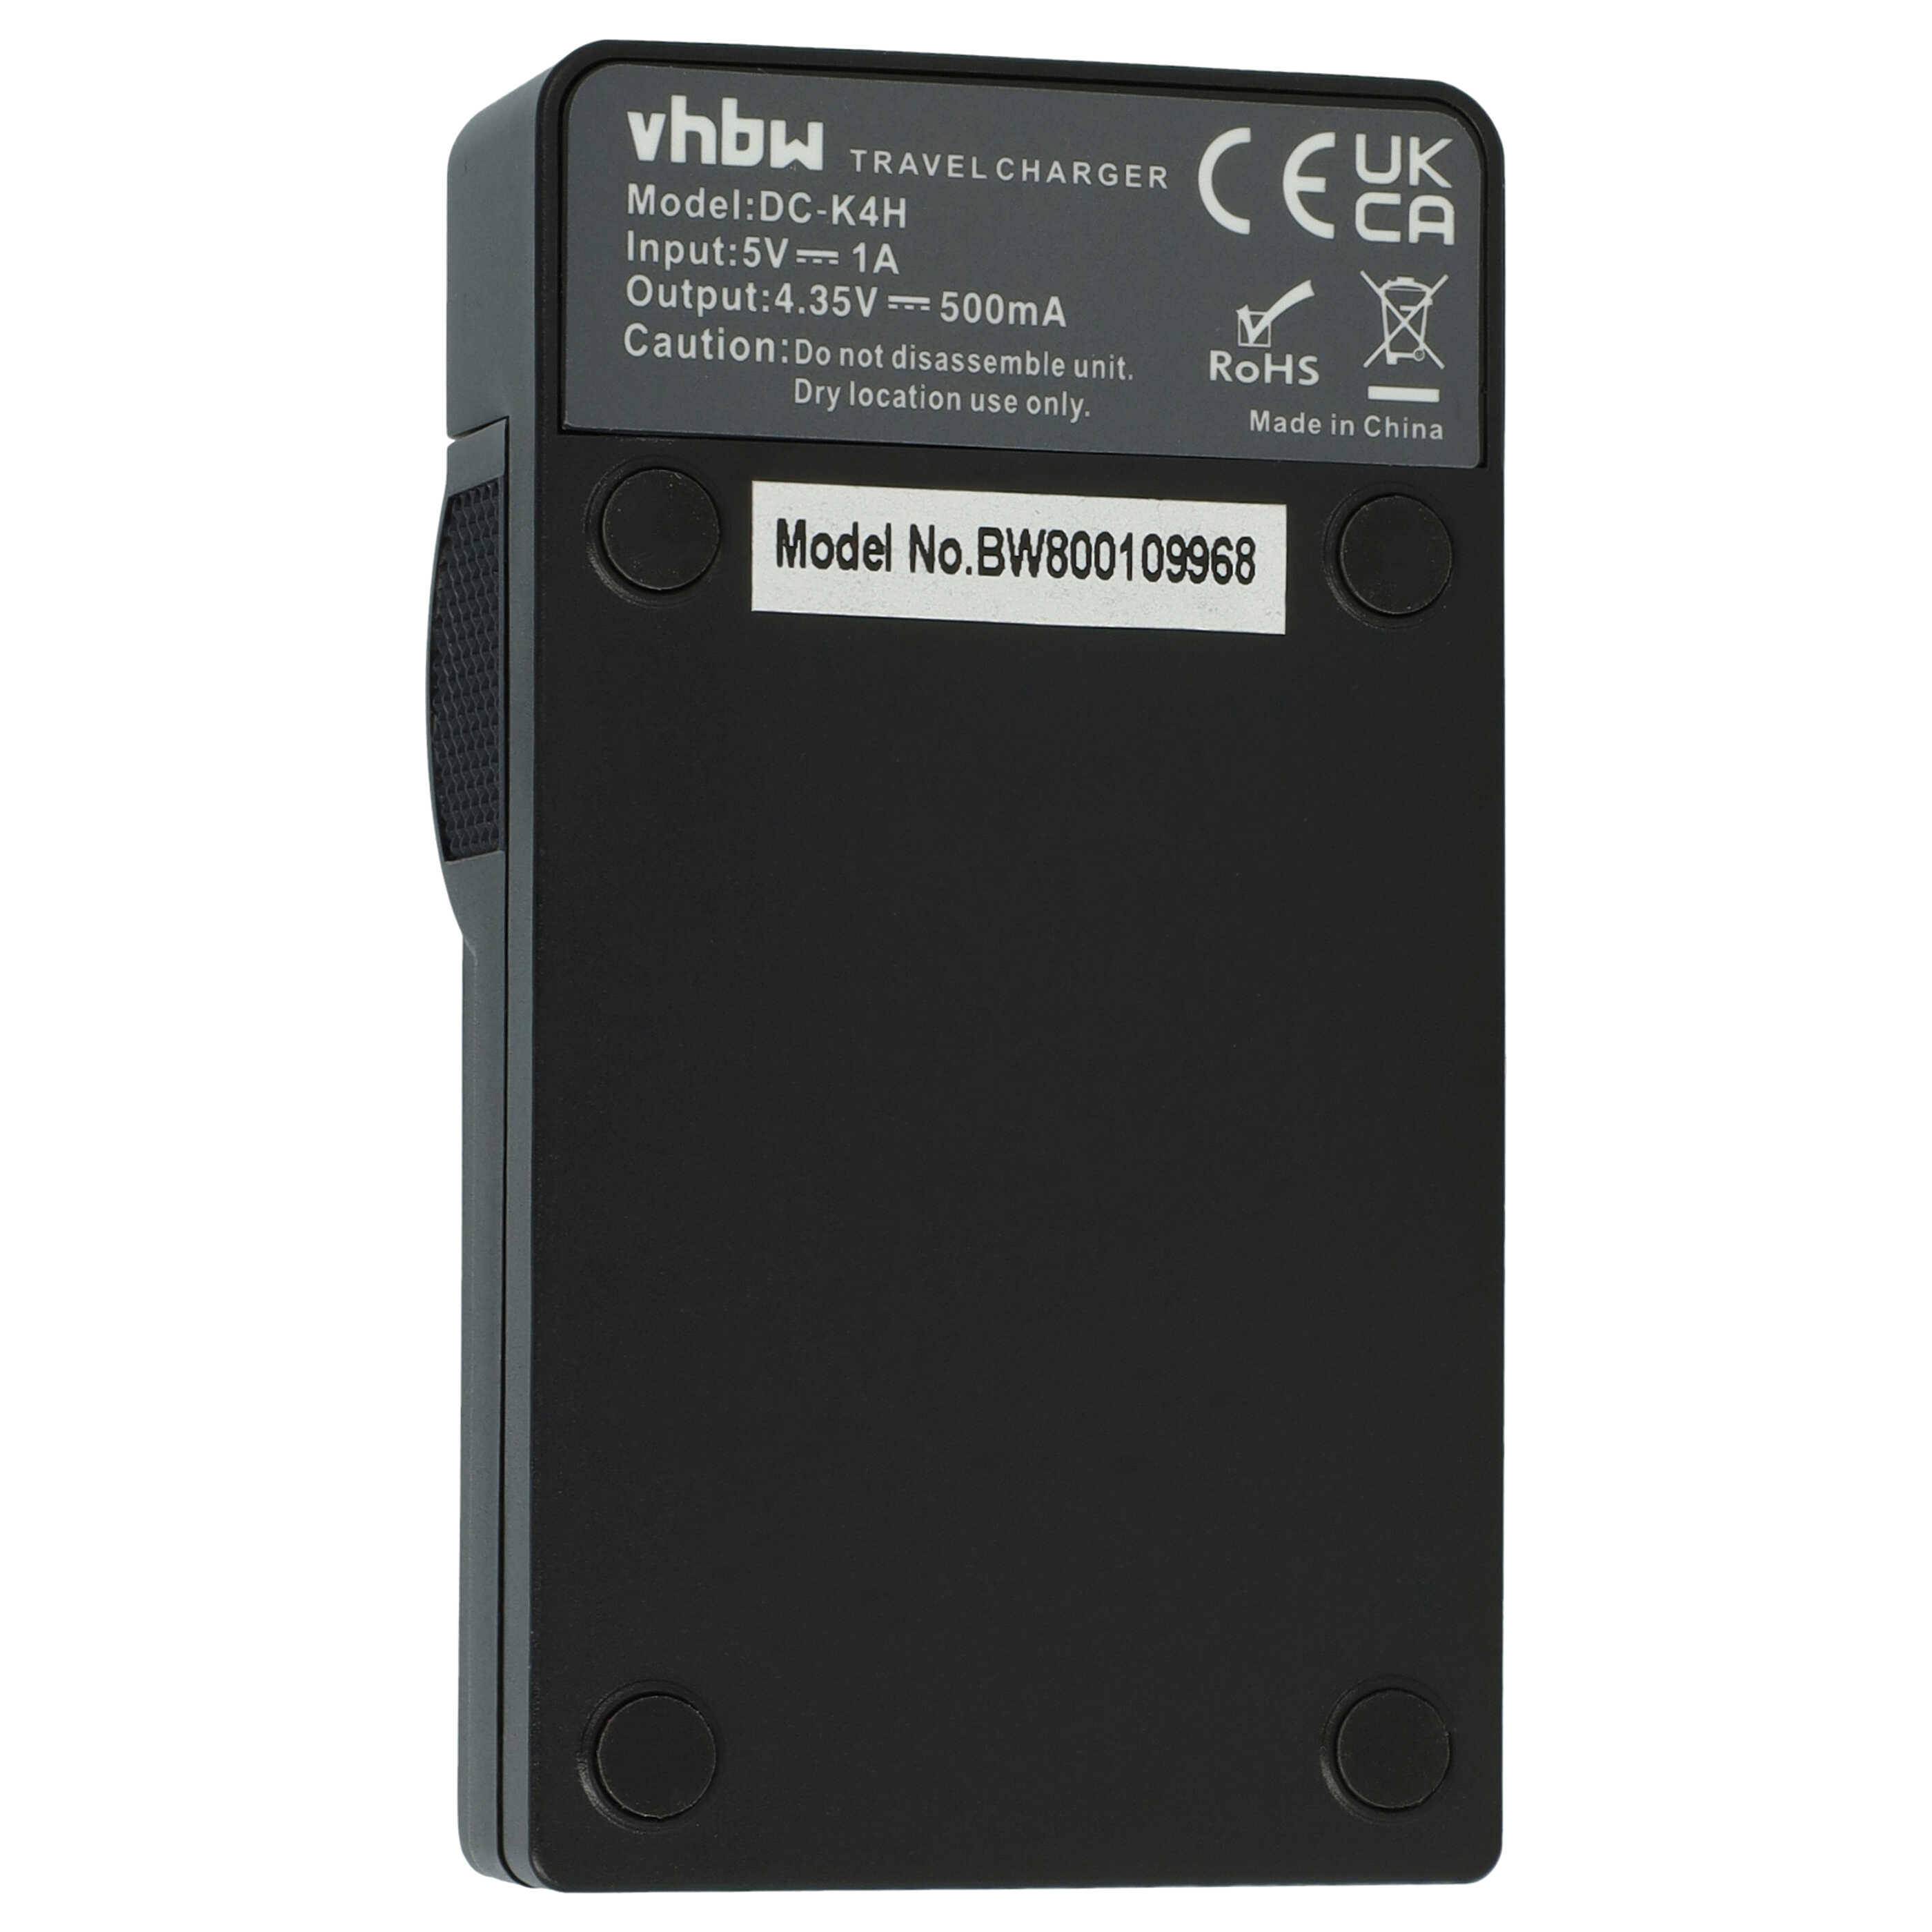 Battery Charger suitable for Nikon EN-EL23 Camera etc. - 0.5 A, 4.35 V